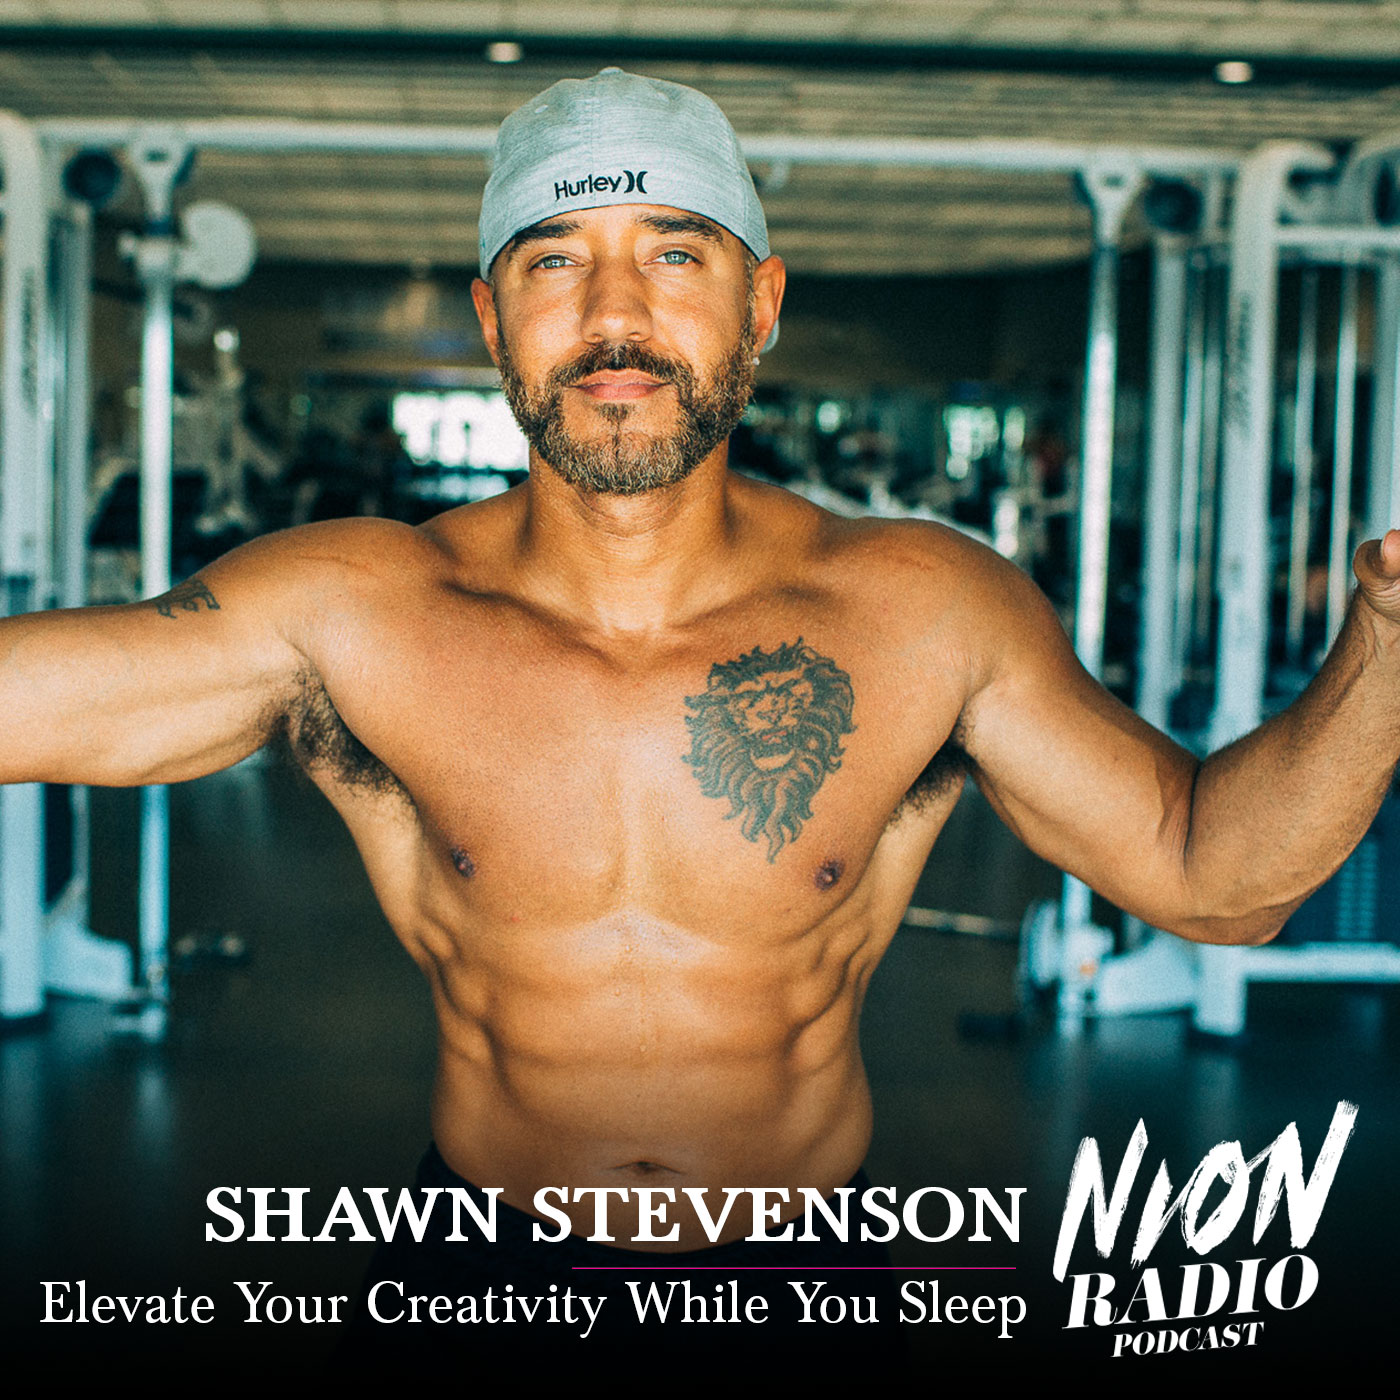 Shawn Stevenson on Nion Radio